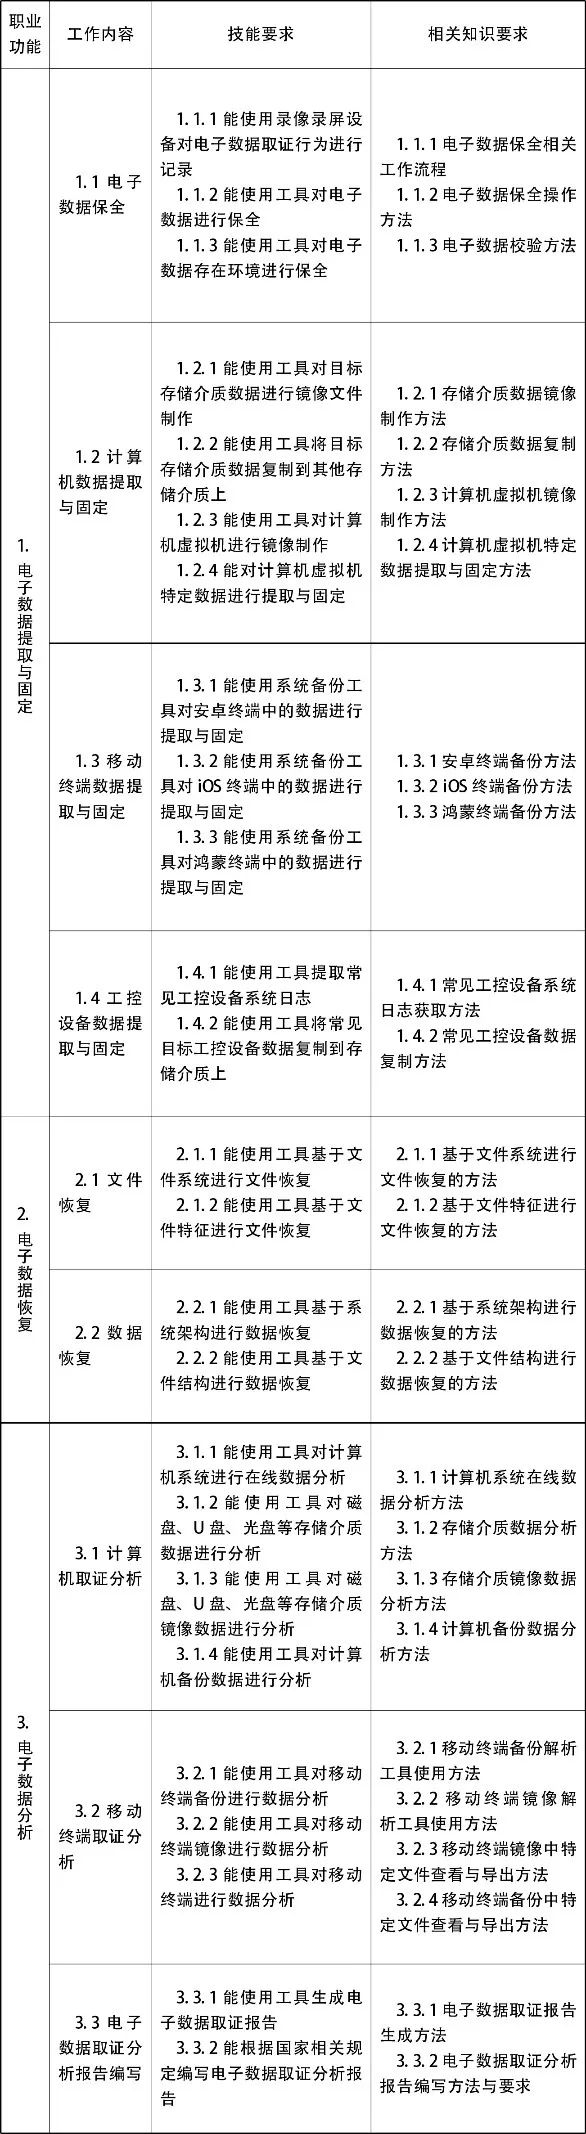 奇安信完成中国首批人社部电子数据取证分析师认证